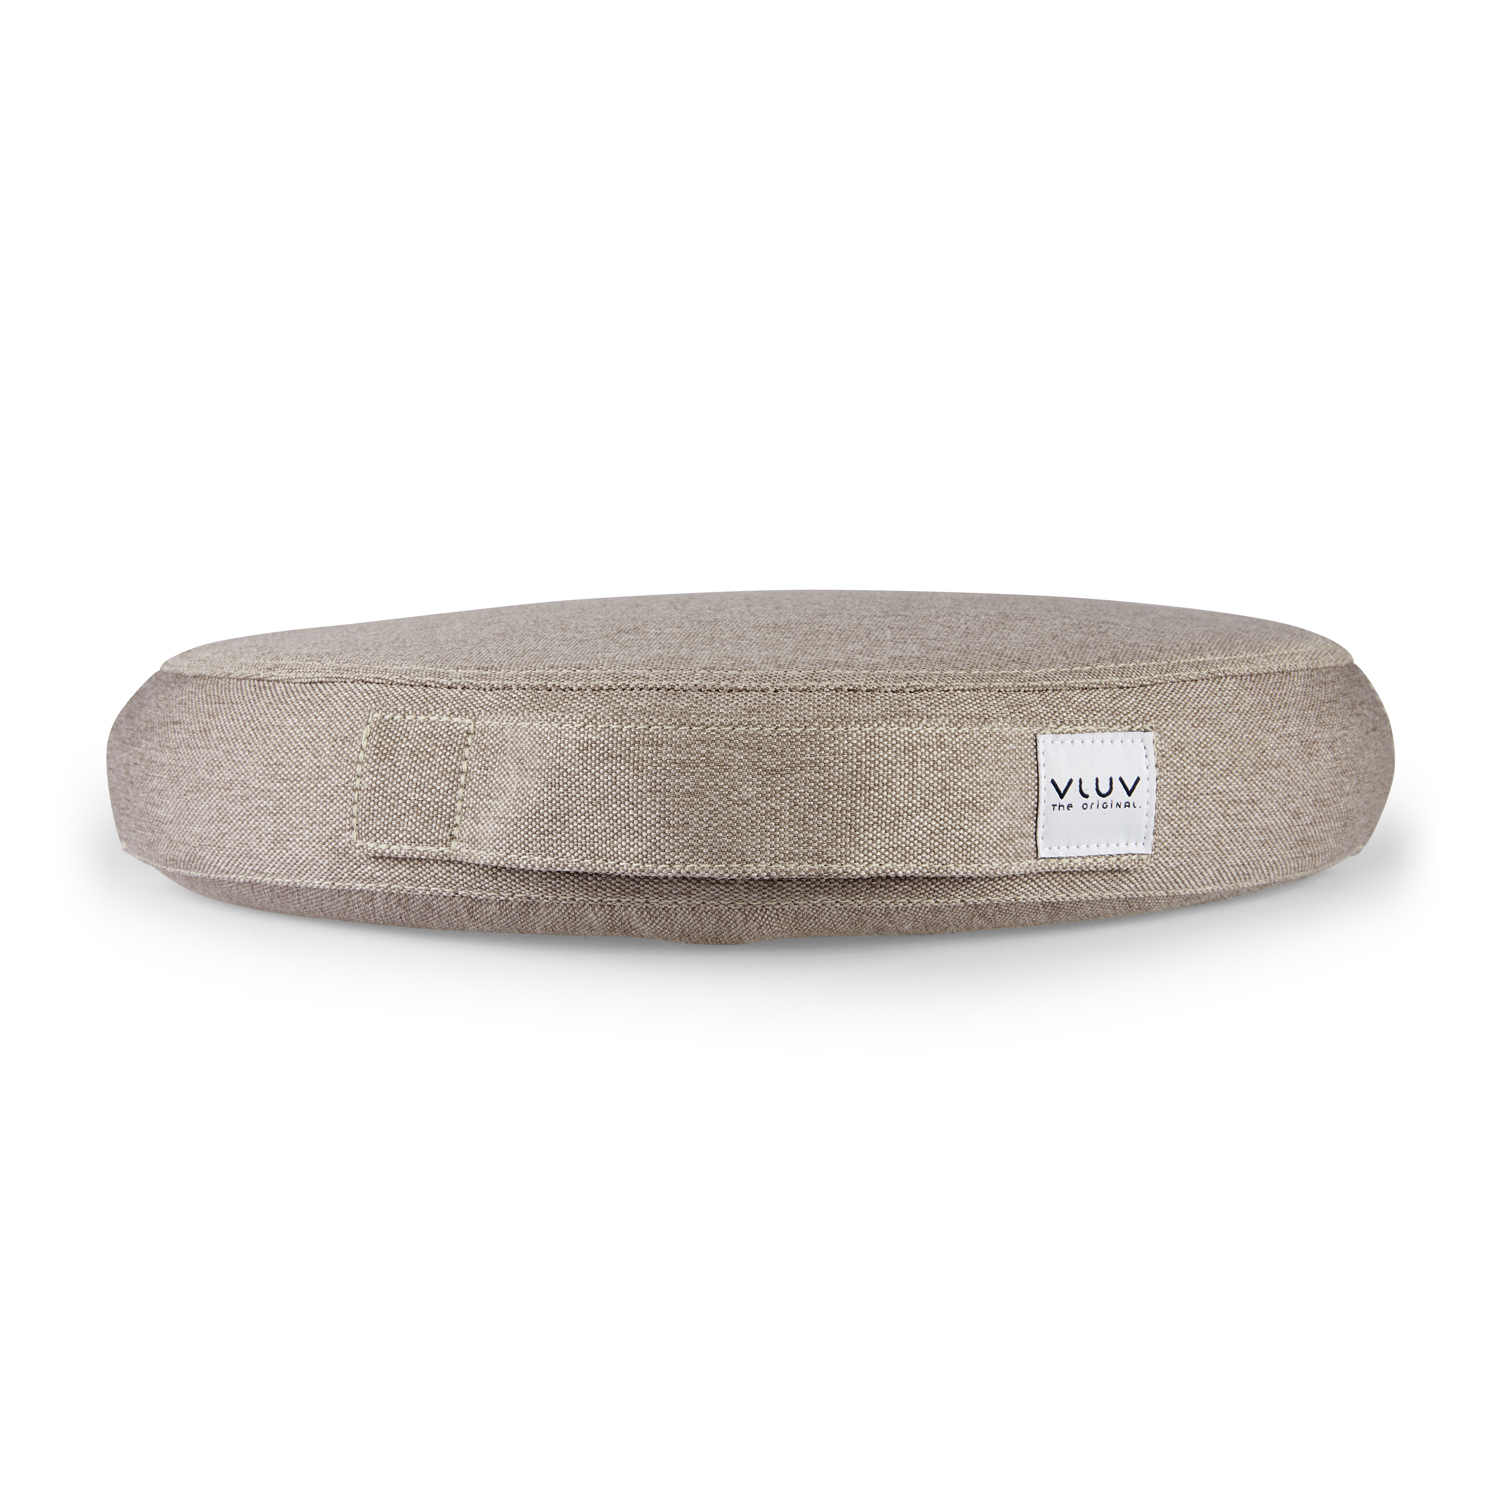 VLUV Balancekissen PIL&PED LEIV stone für gesundes und aufrechtes Sitzen